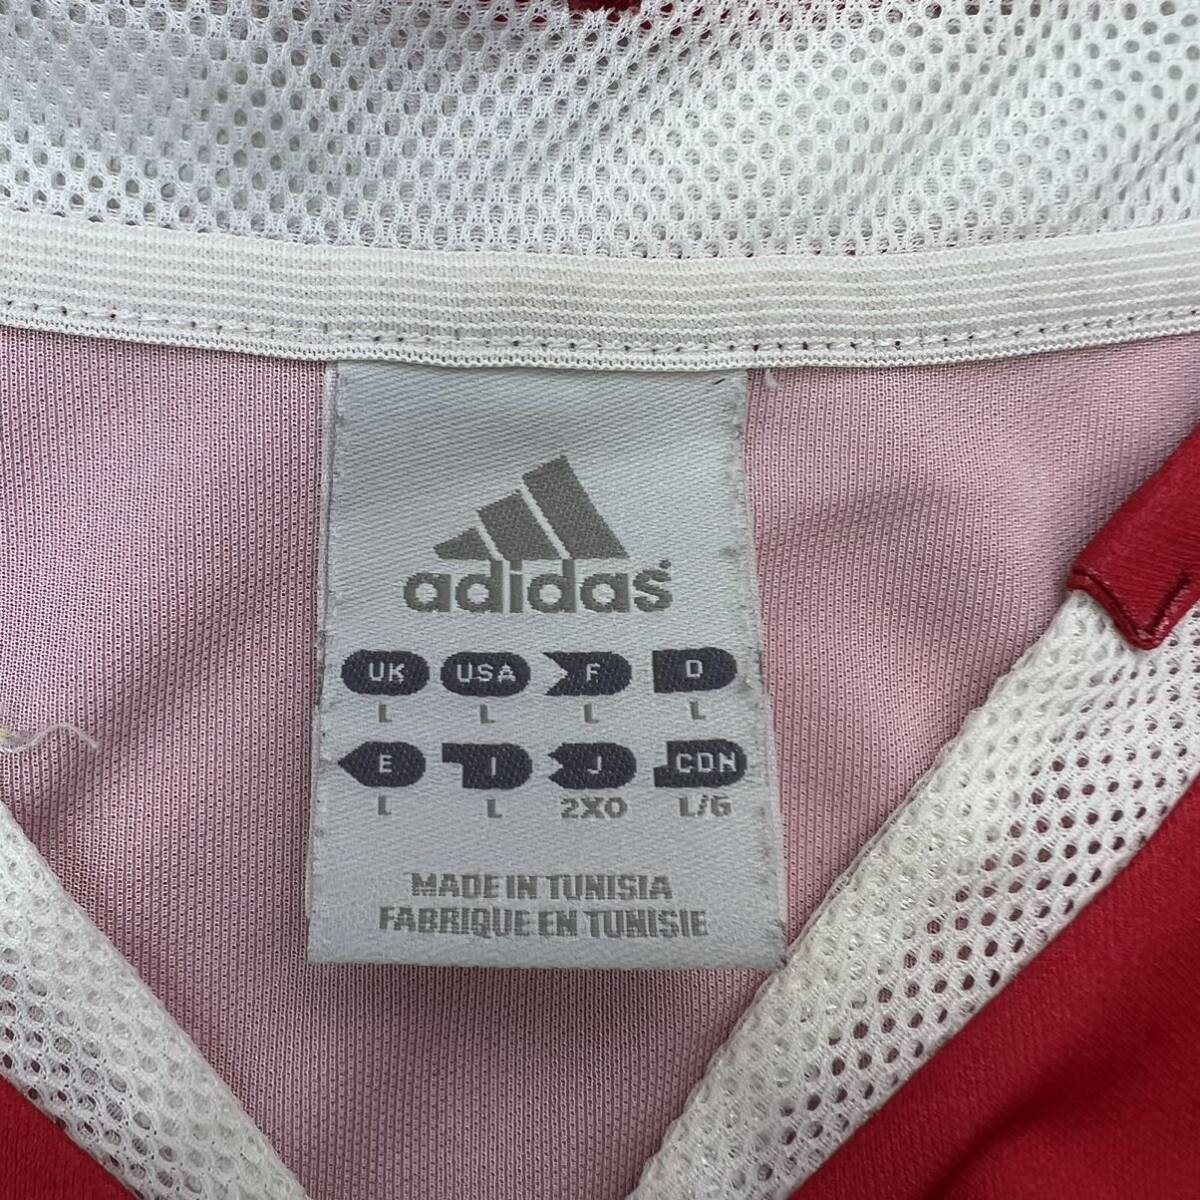 adidas ☆ AJAX AMSTERDAM 05/06 ユニフォーム ゲームシャツ ホワイト レッド 2XO サッカー スポーツ 人気 アヤックス アディダス■BH153_画像5